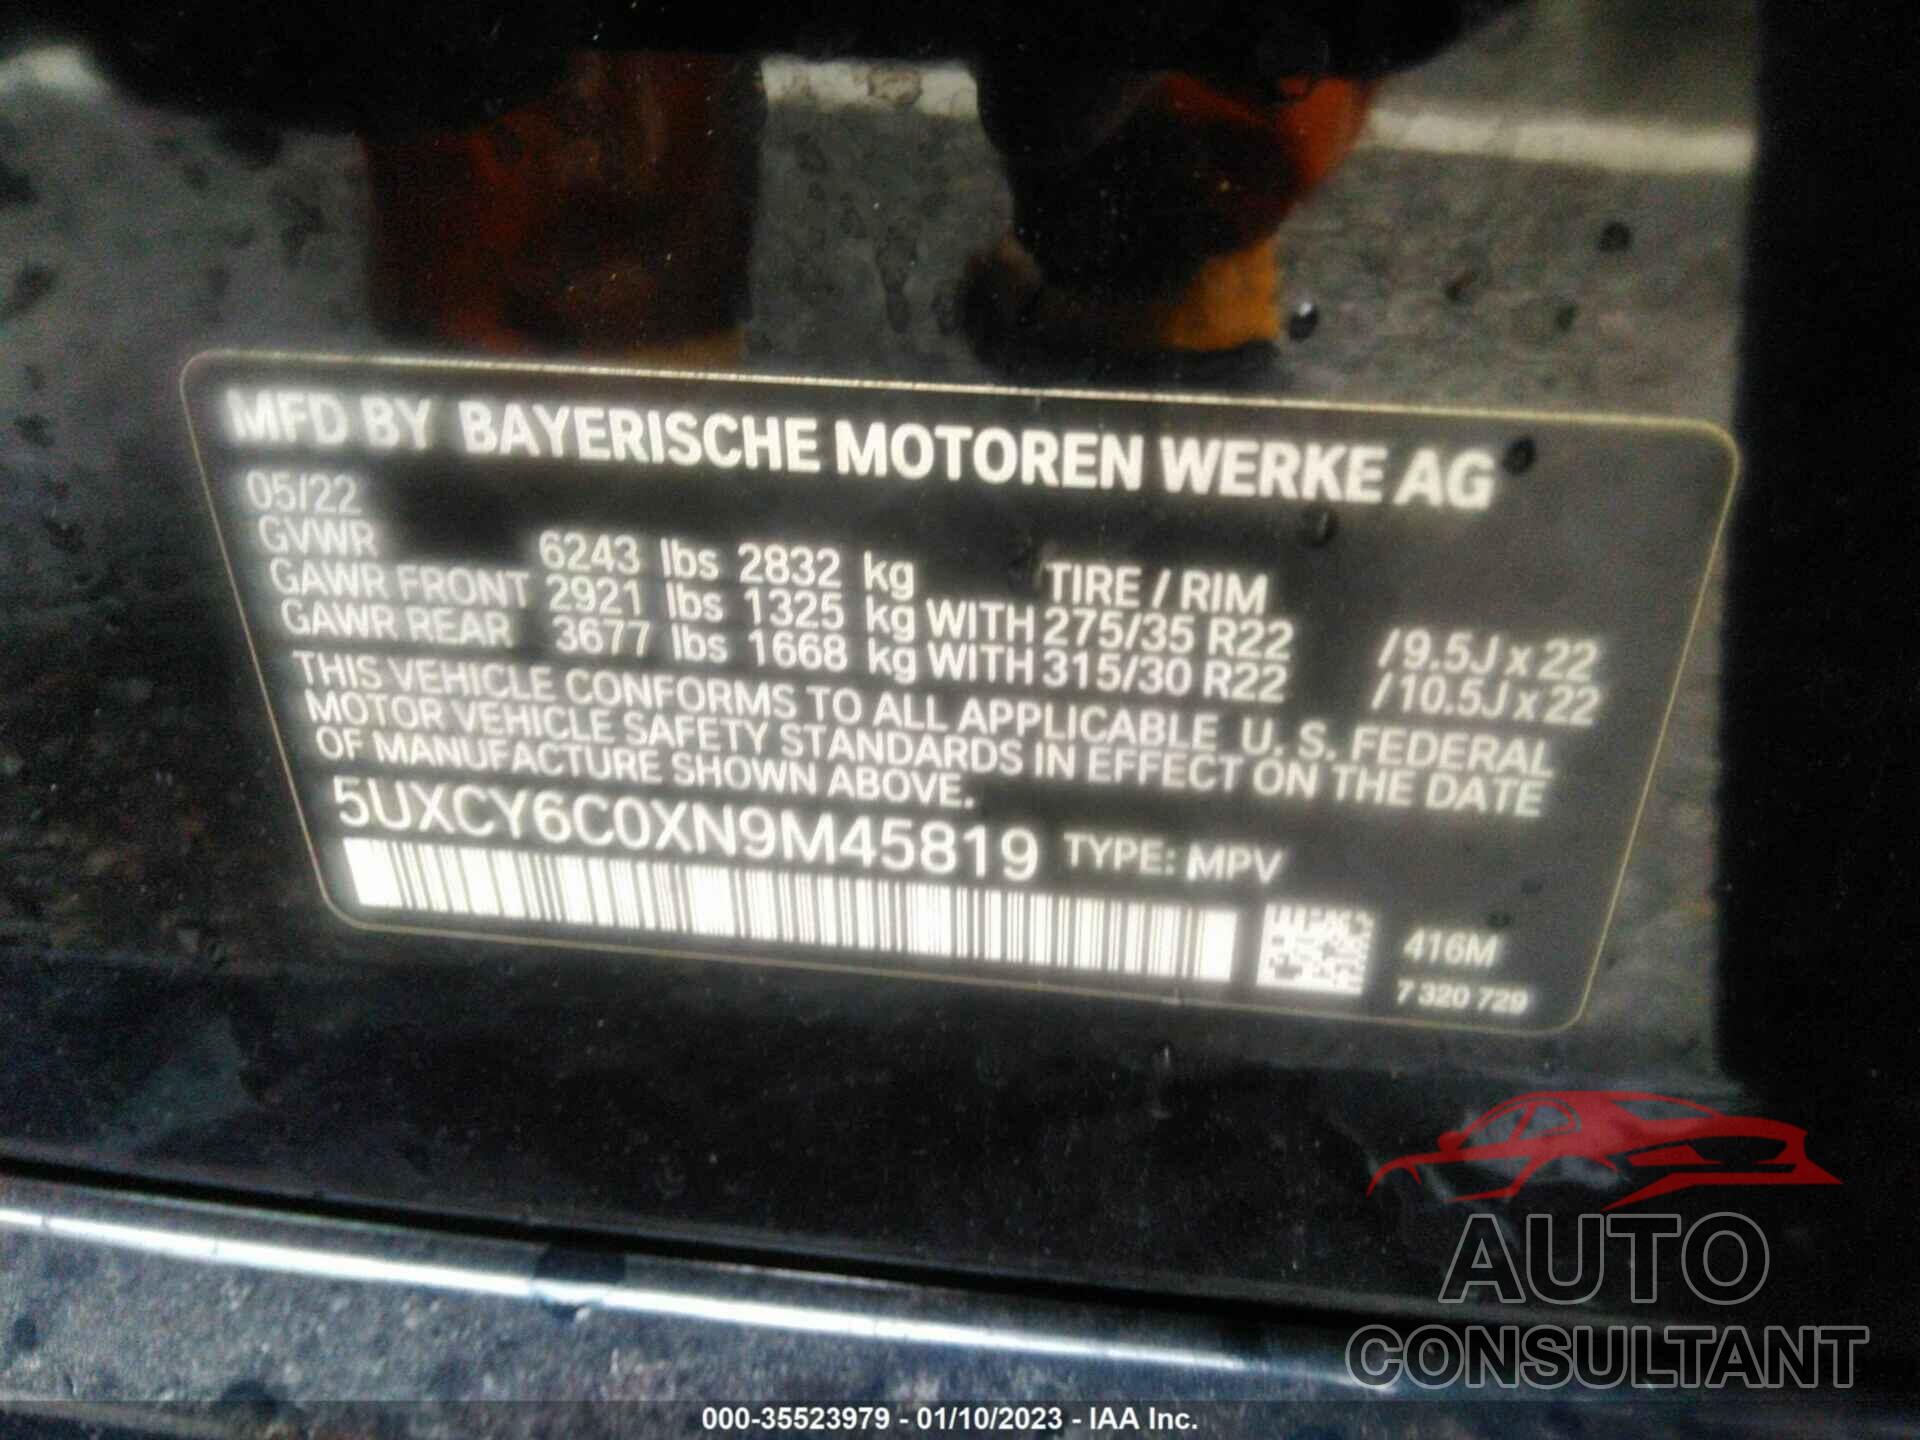 BMW X6 2022 - 5UXCY6C0XN9M45819